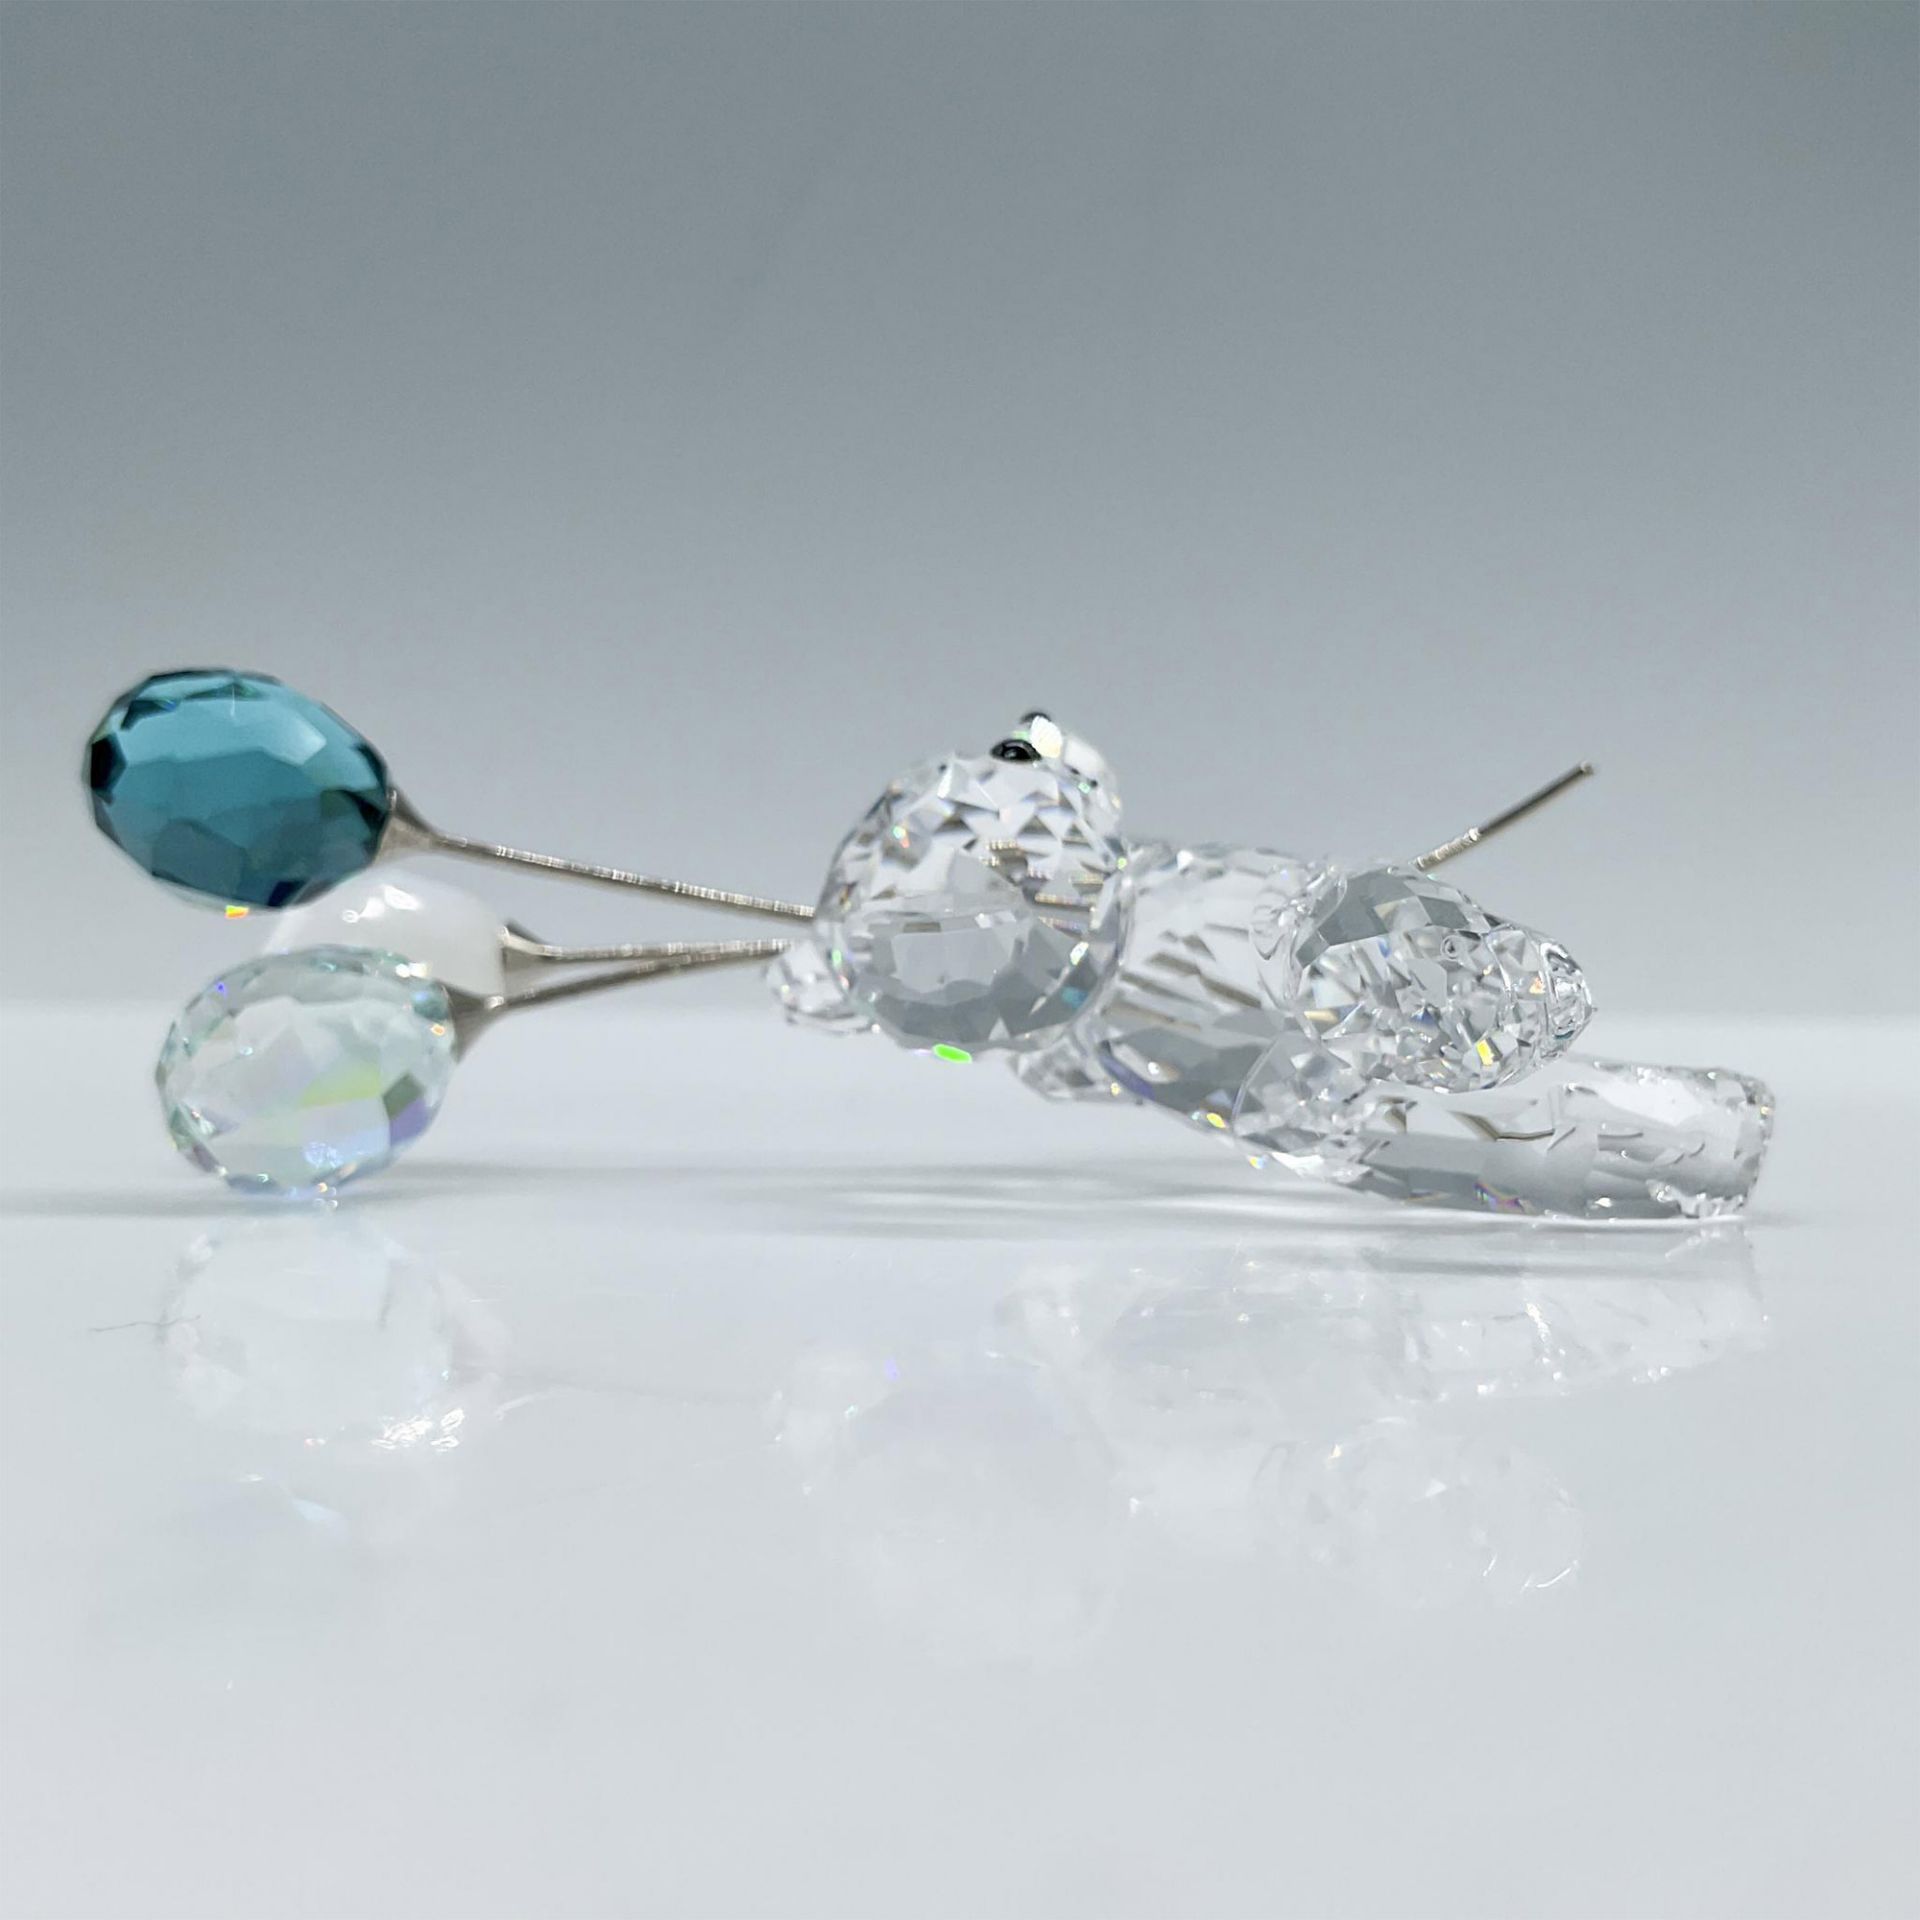 Swarovski Crystal Figurine, Ballons For You - Image 3 of 4